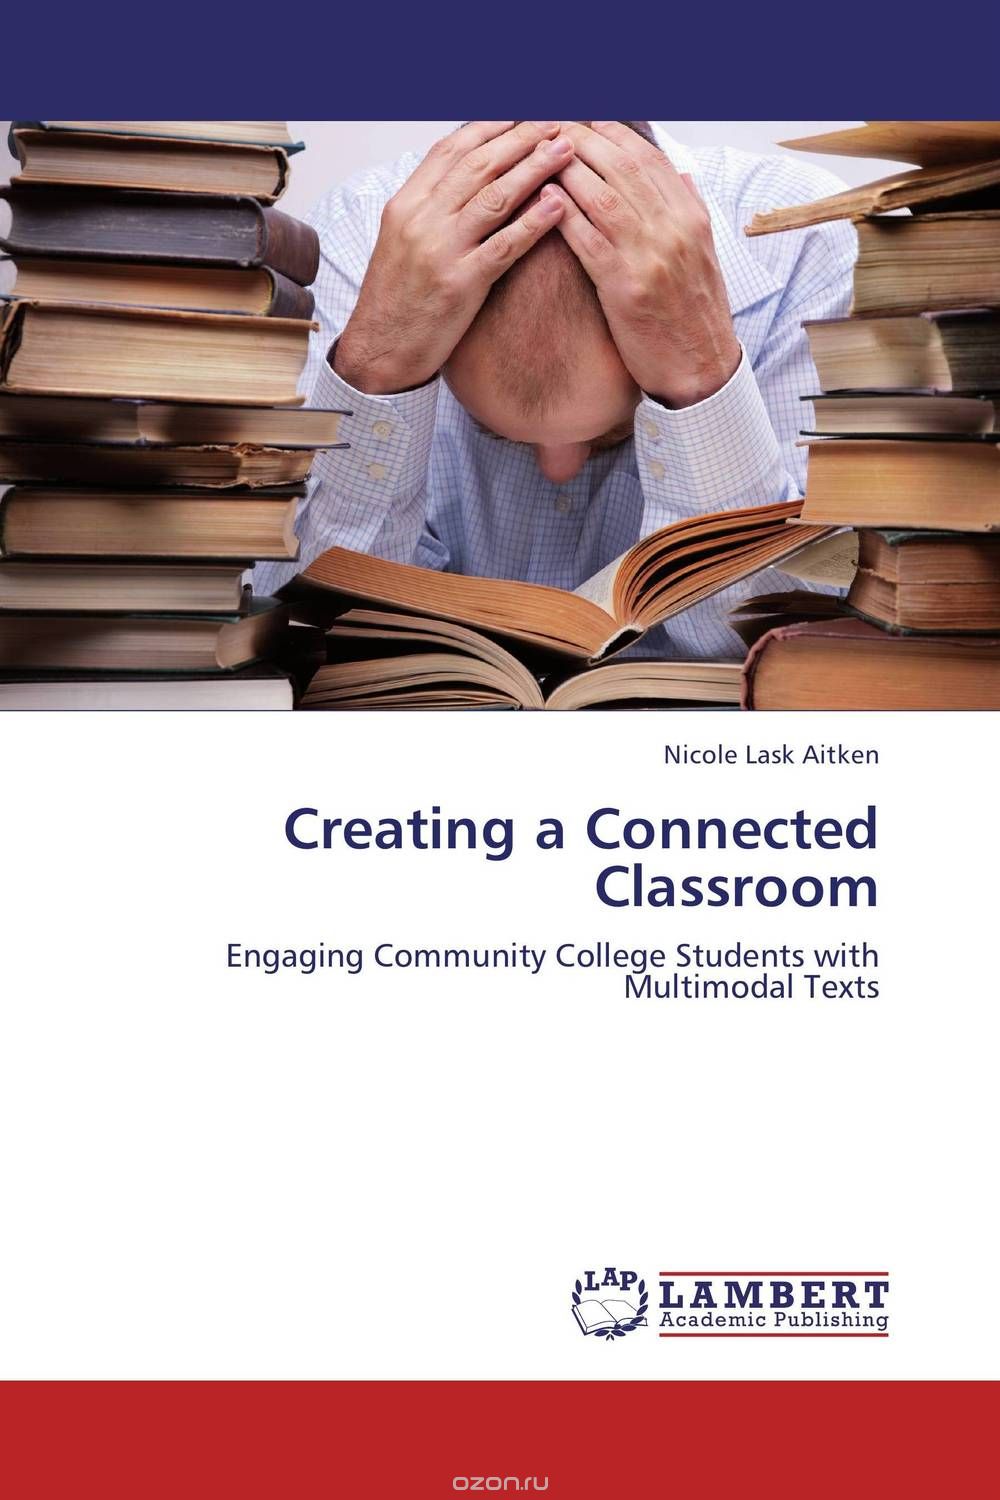 Скачать книгу "Creating a Connected Classroom"